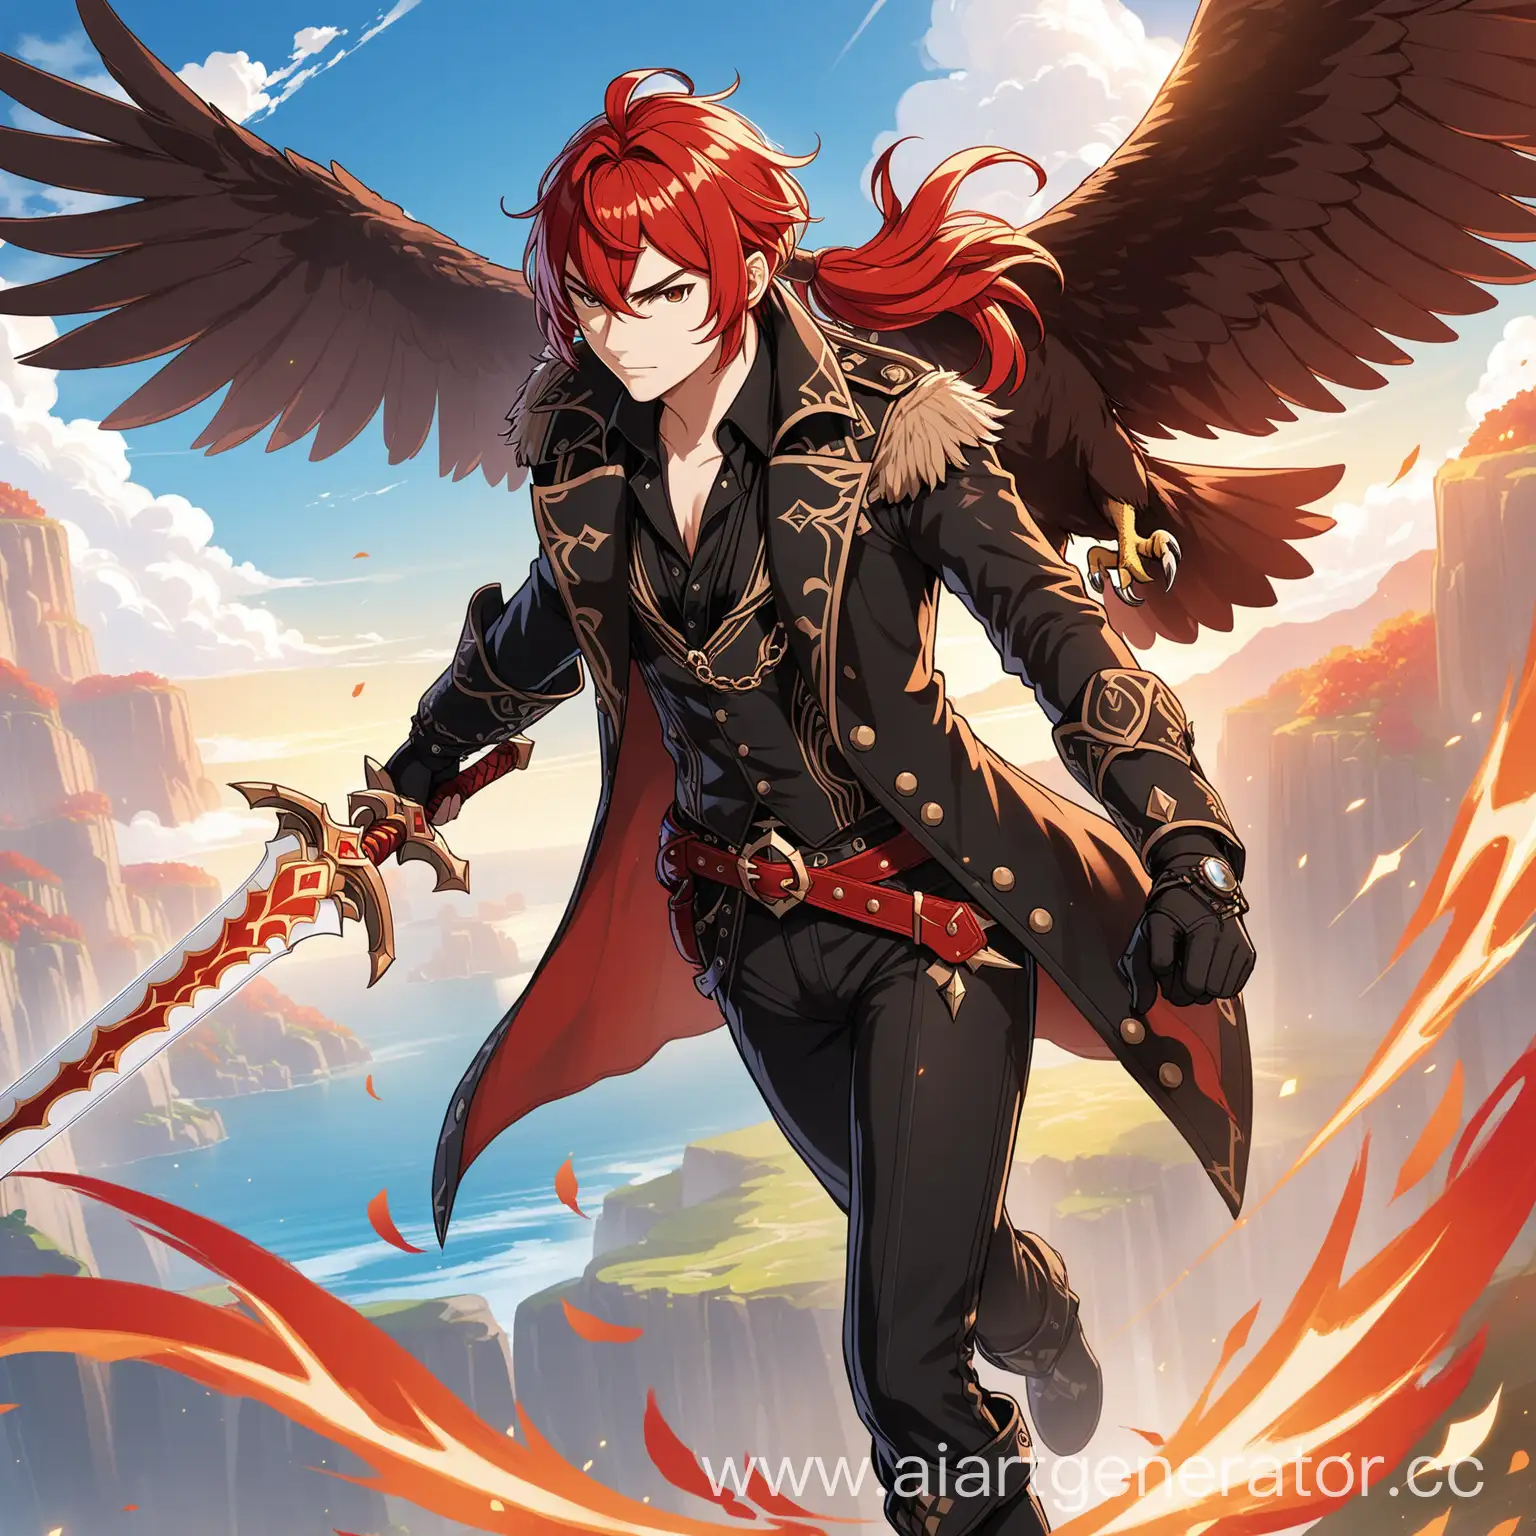 Дилюк из геншин импакт, красные волосы, причёска красный хвост, в руках двуручный меч, рядом пролетает орёл